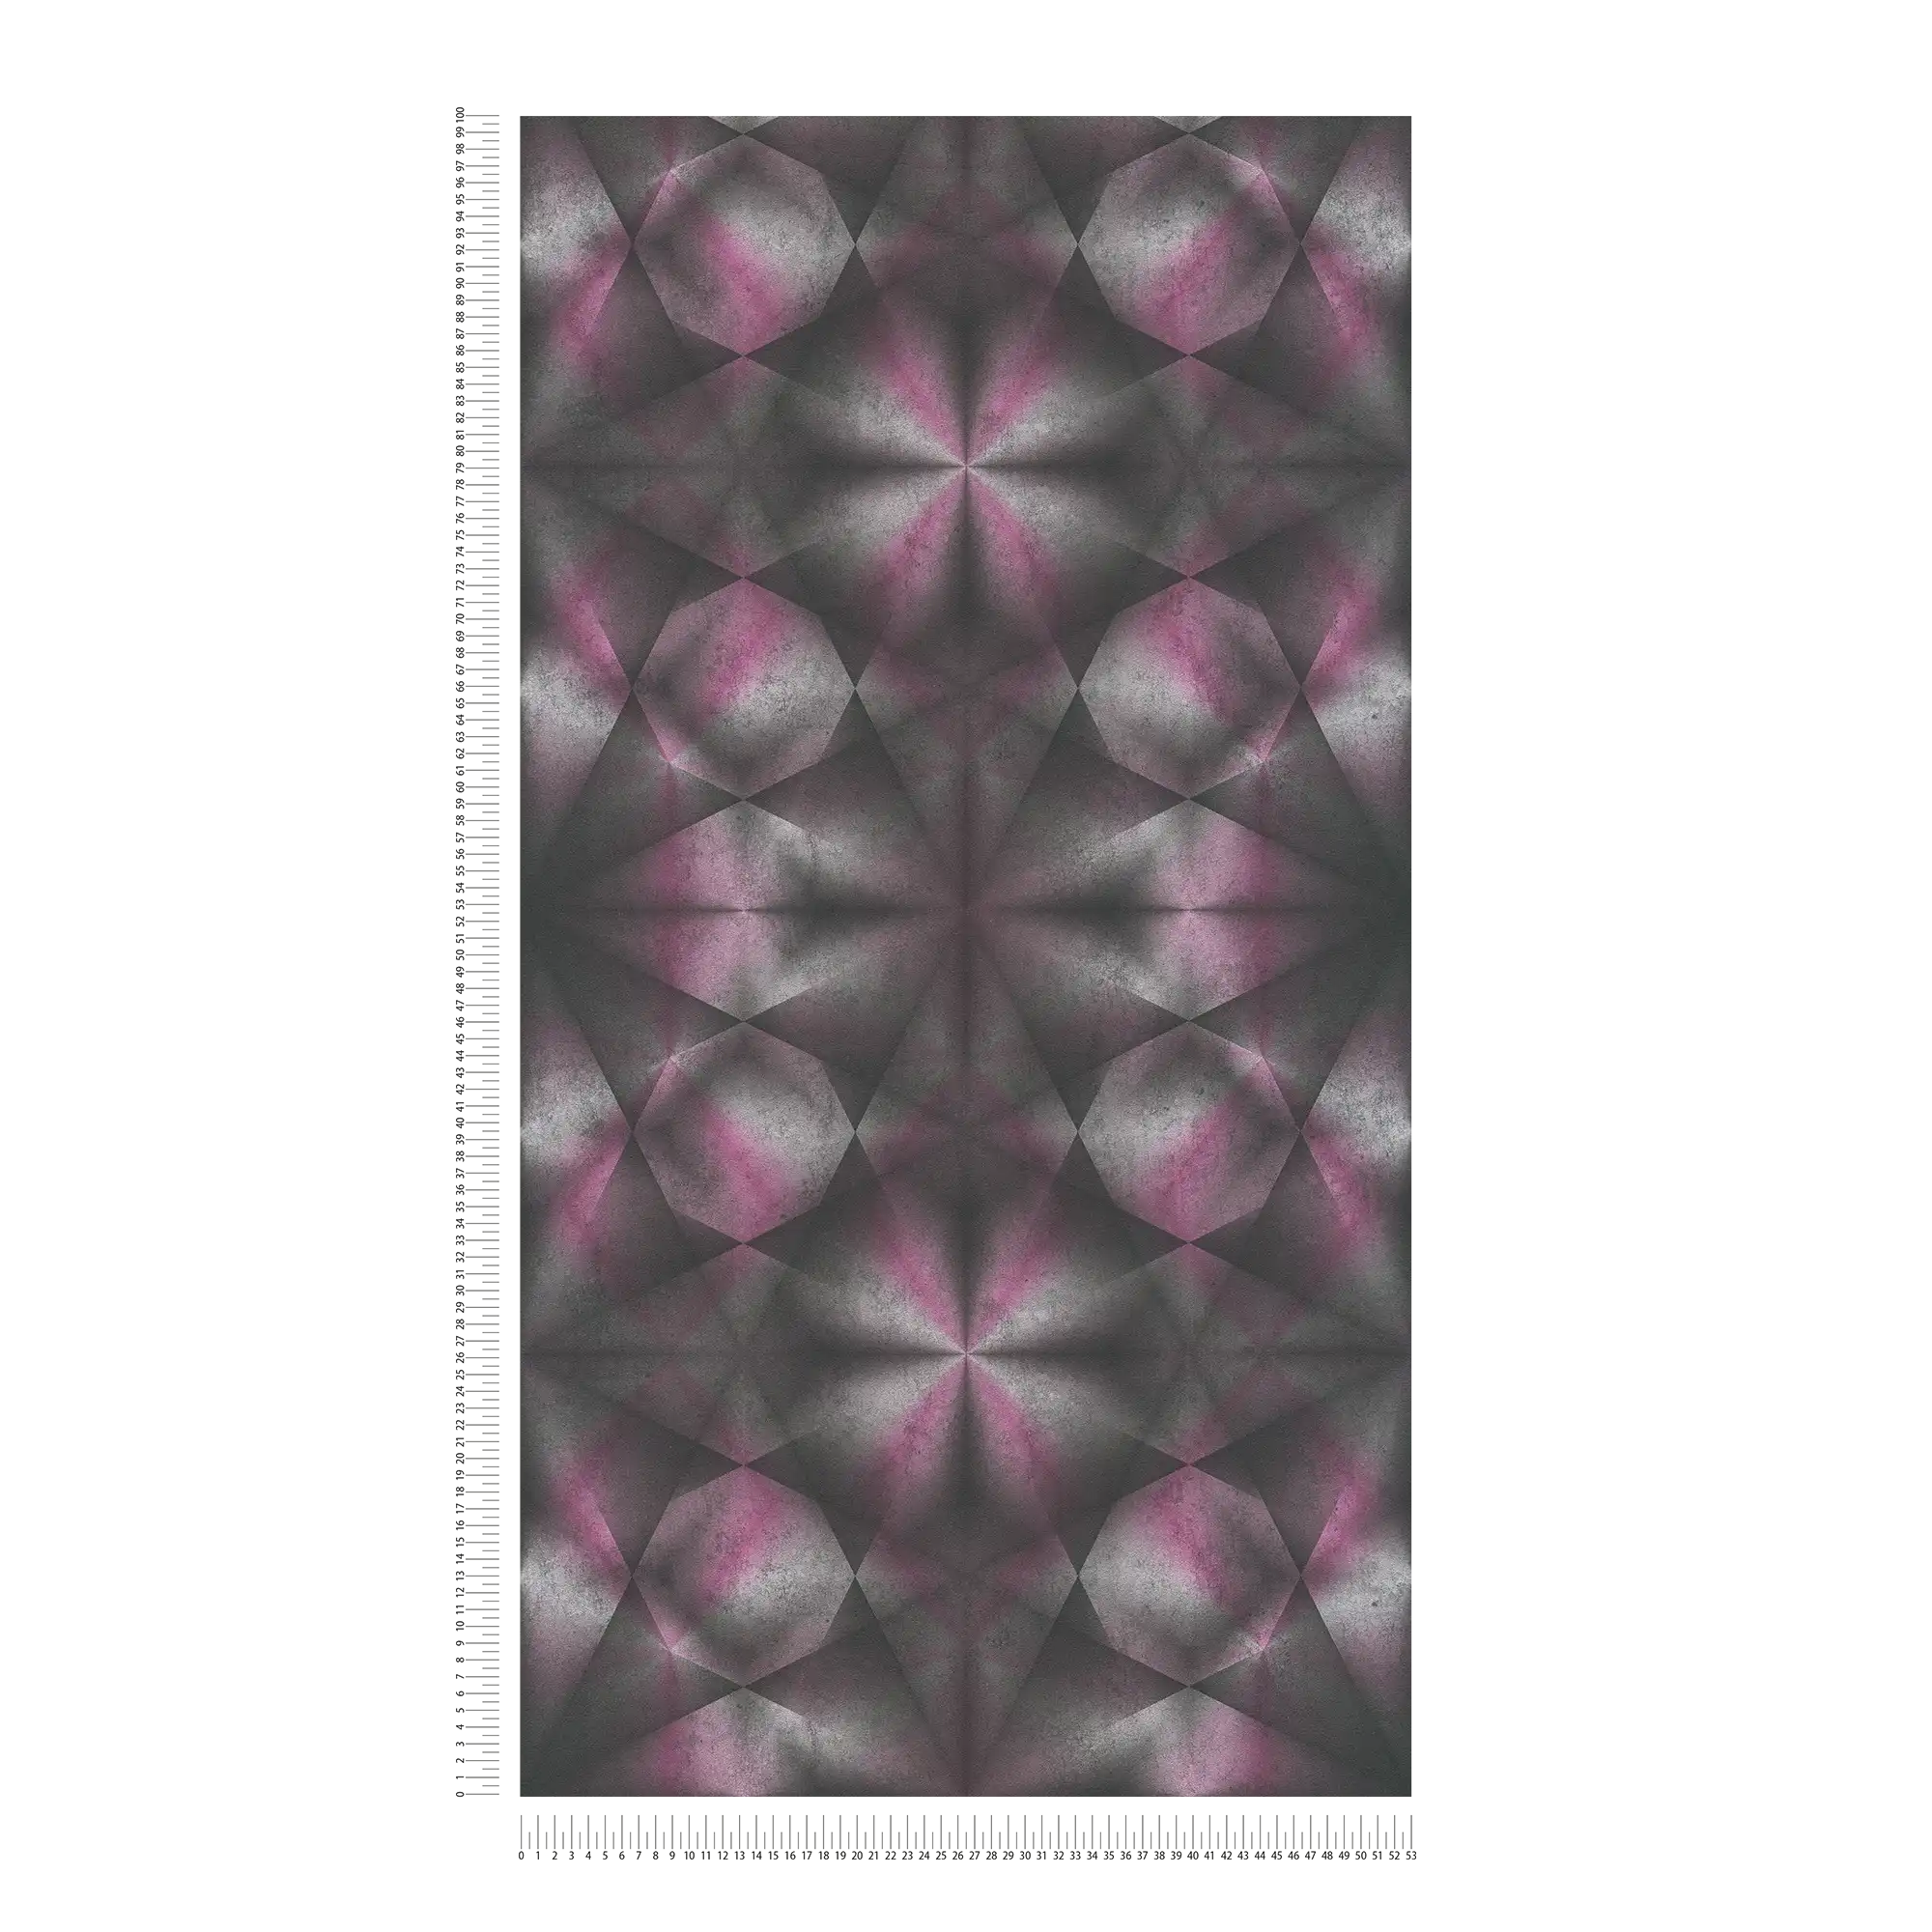             Designbehang met betonlook & grafisch patroon - paars, grijs, zwart
        